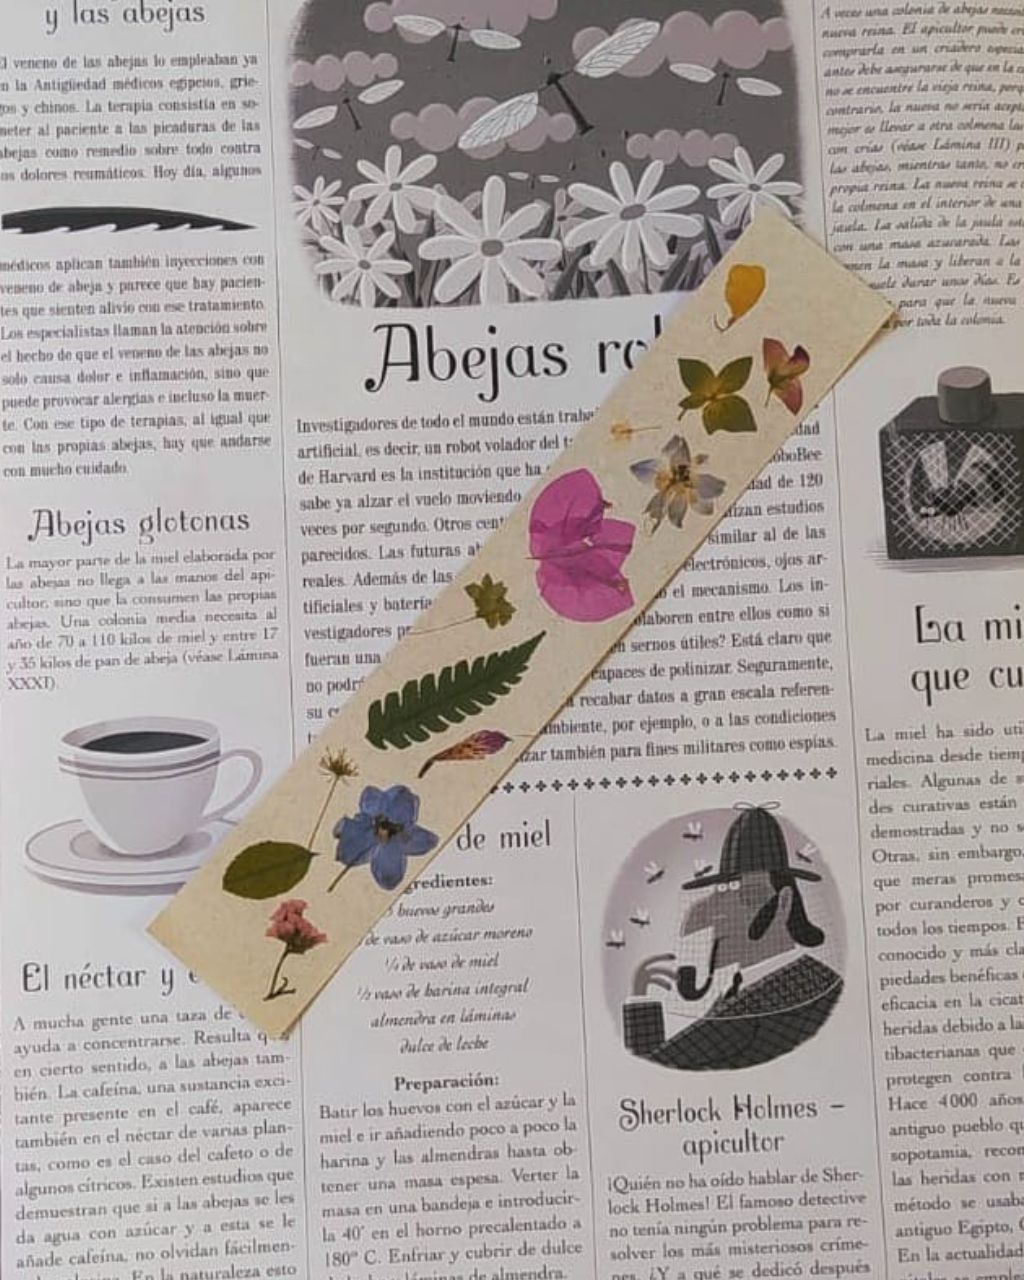 Bookmark con print de flores colombianas con diversos colores sobre papel color crudo.